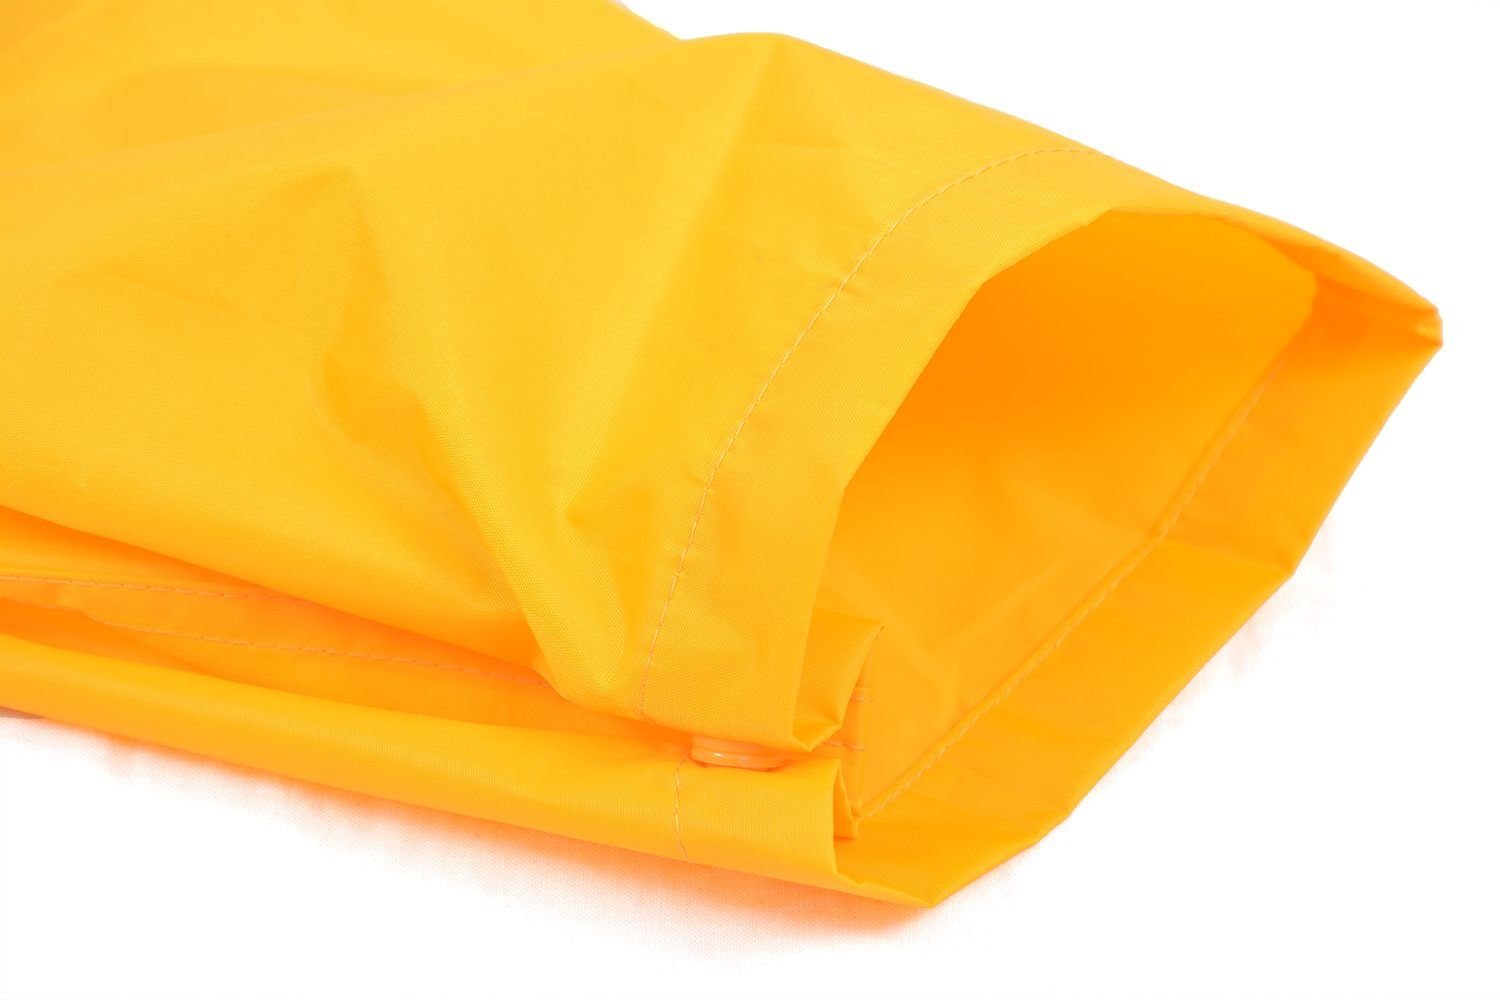 reflektierende (1-tlg), KIDS DRY Regenbekleidung Gelb Regenanzug Regenanzug-Set, Kinder Wasserdichtes